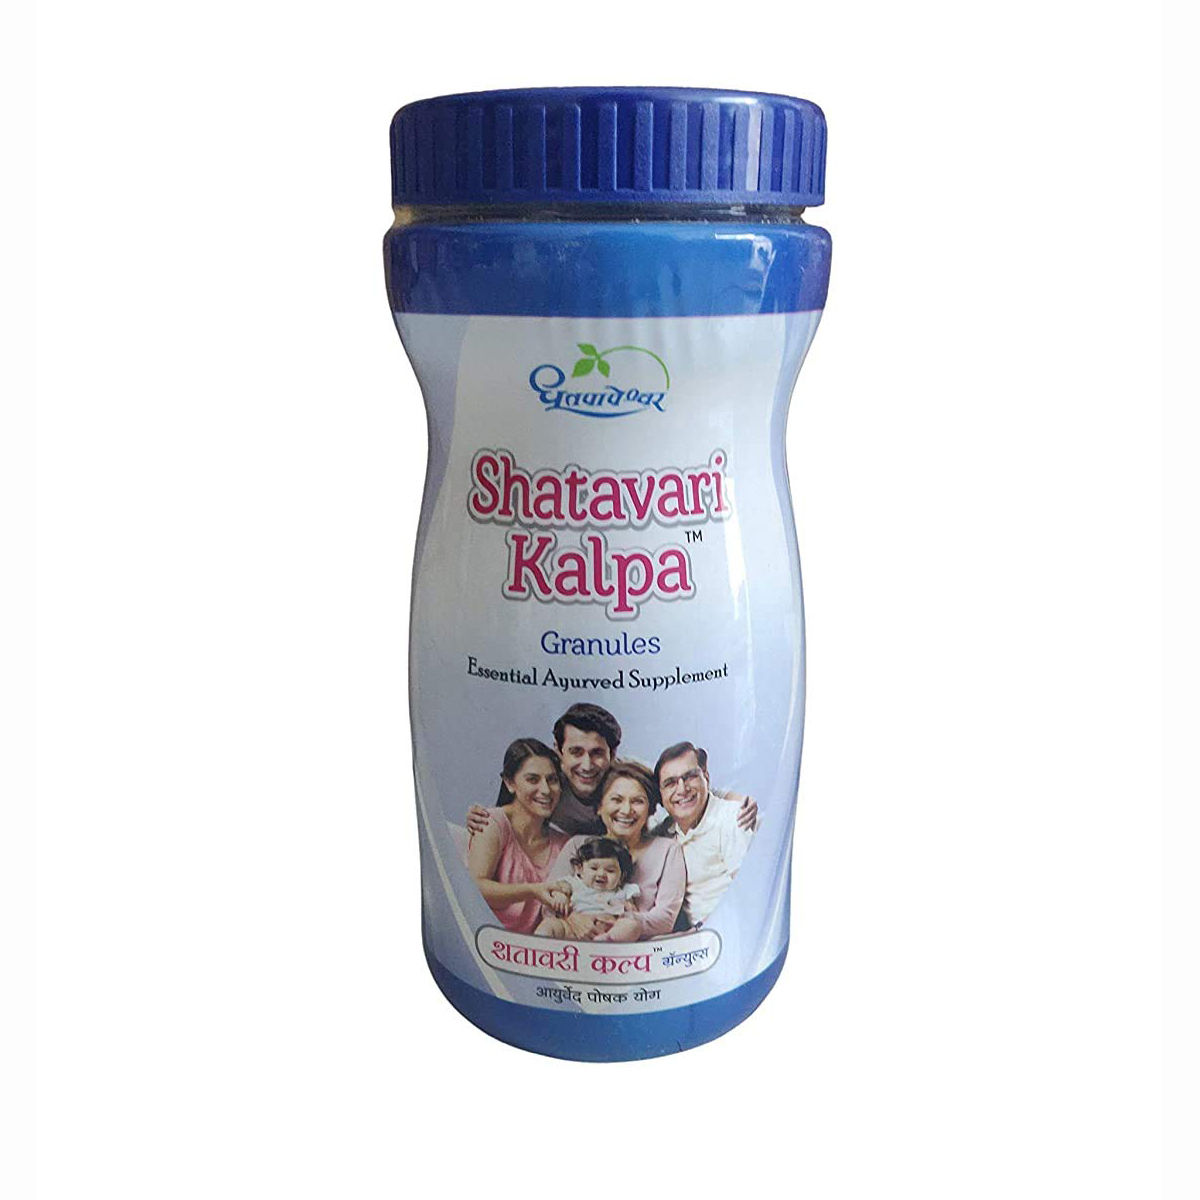 Buy Dhootapapeshwar Shatavari kalpa Granules, 600 gm Online